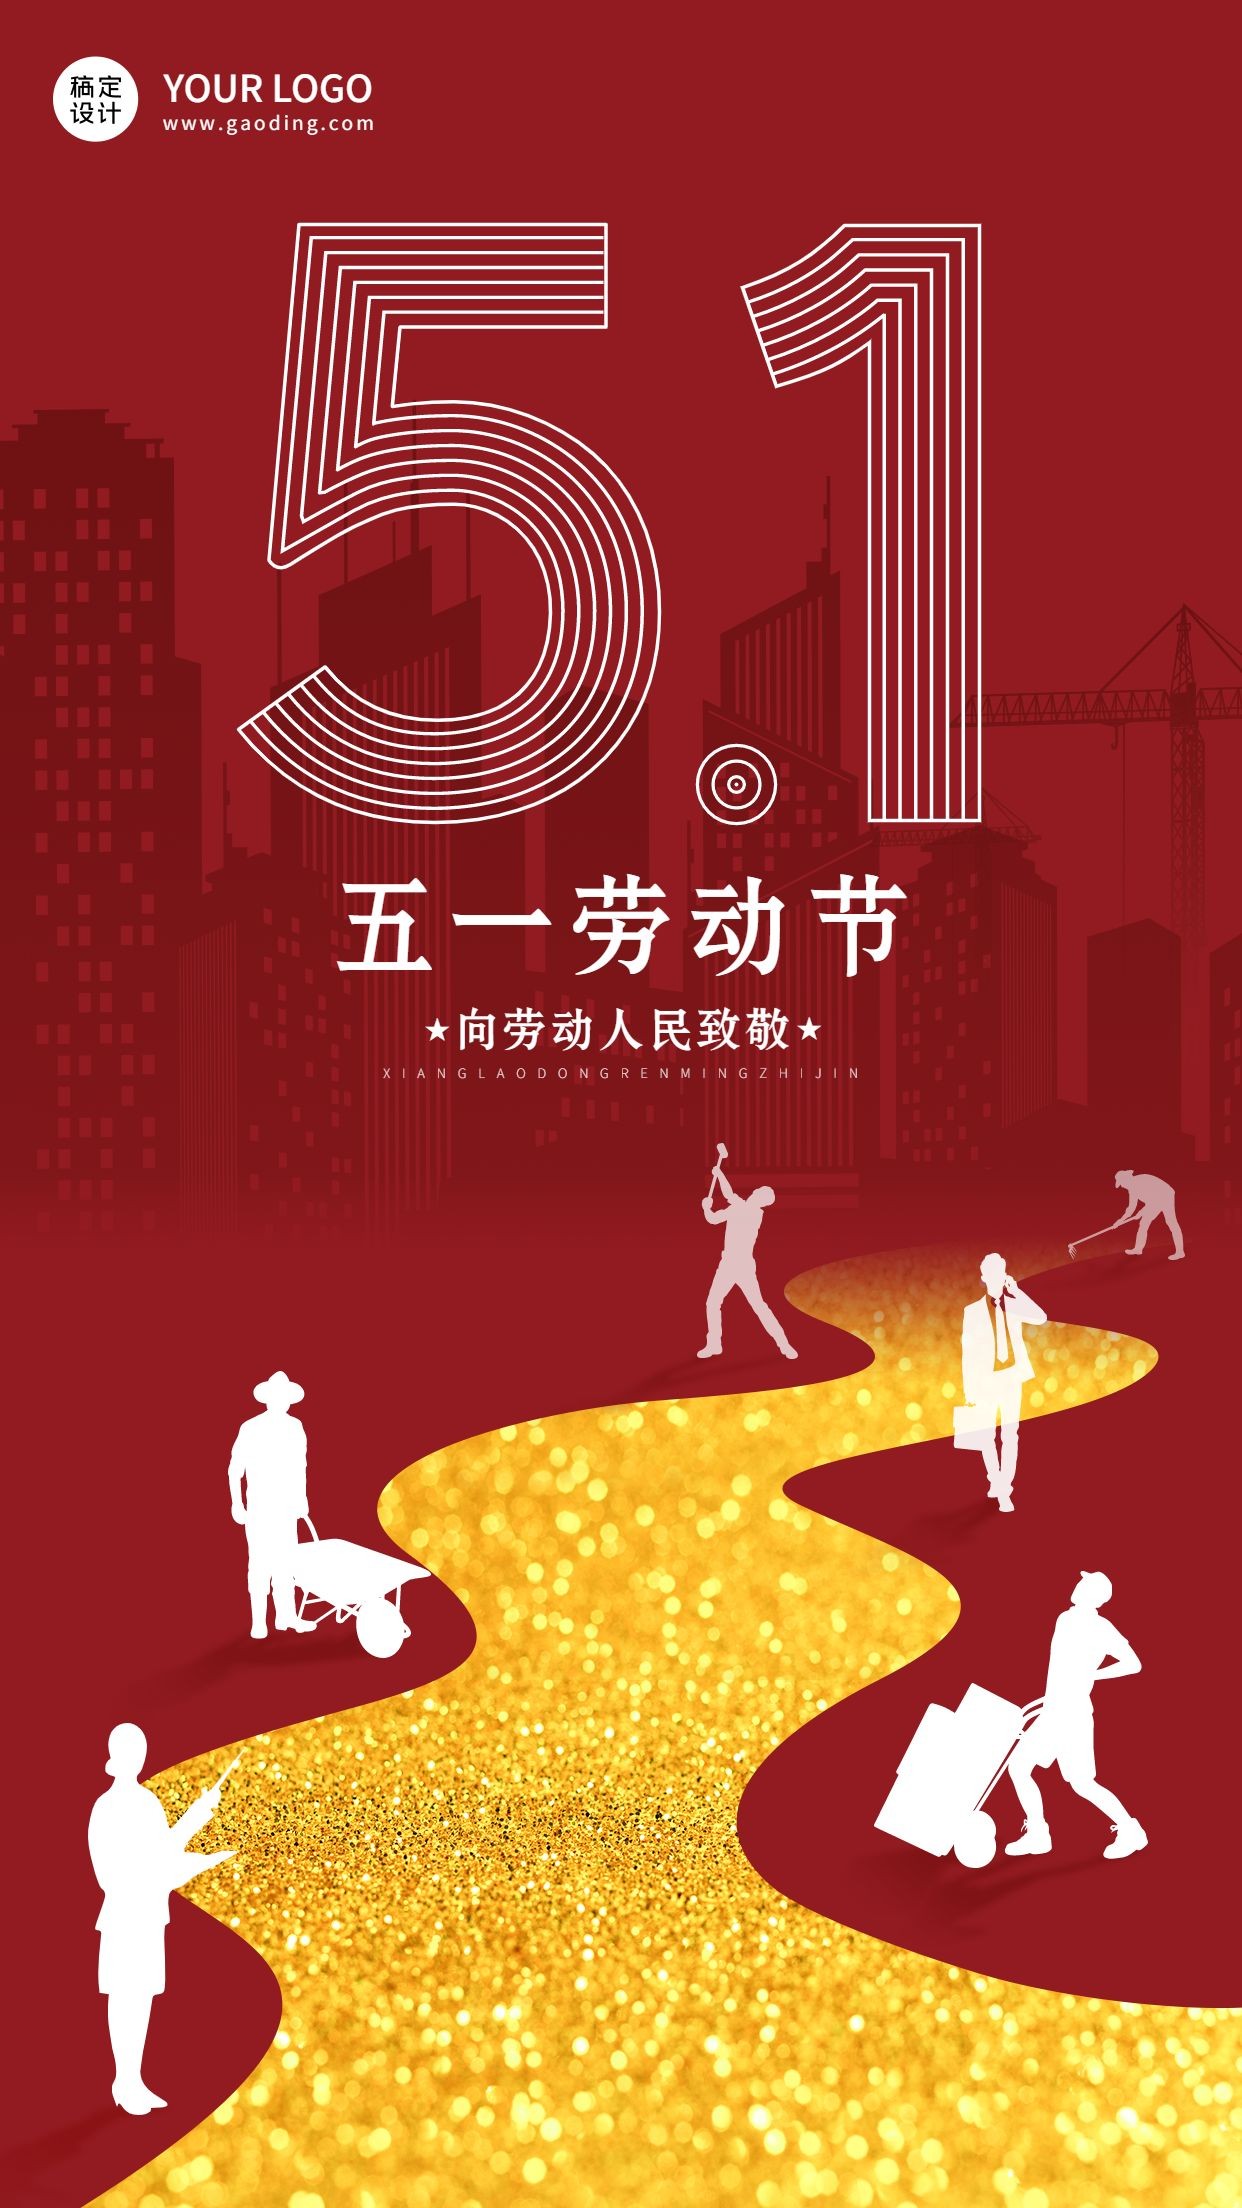 劳动节节日祝福党政排版手机海报